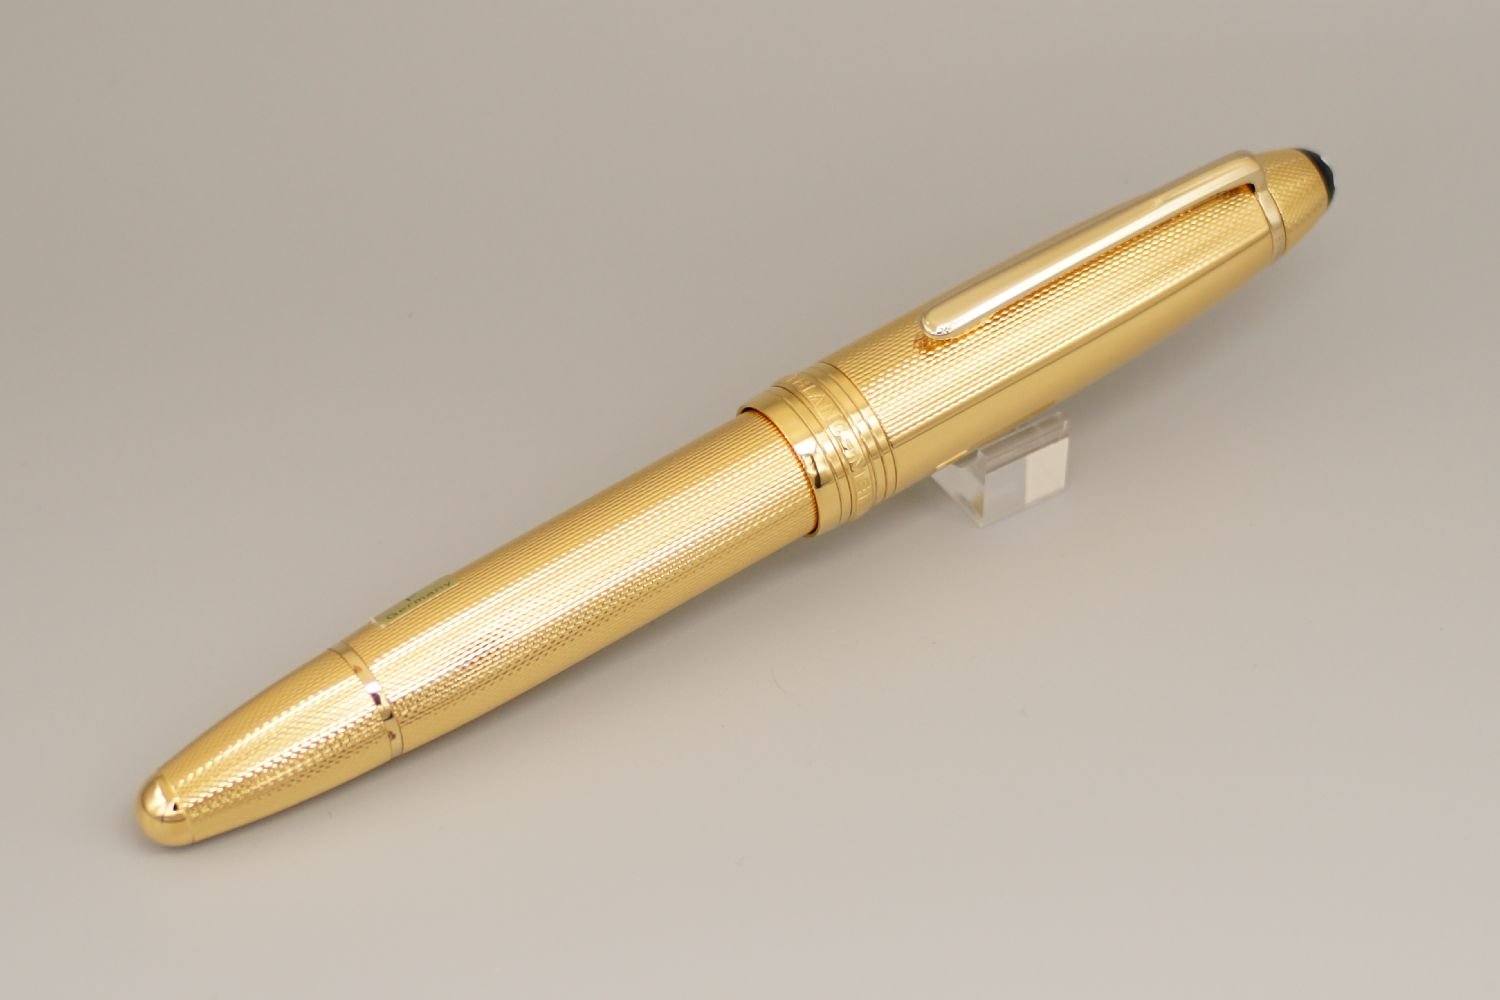 品質保証付き 【新品】MONTBLANC ゴールド万年筆 マイスターシュテュック 筆記具